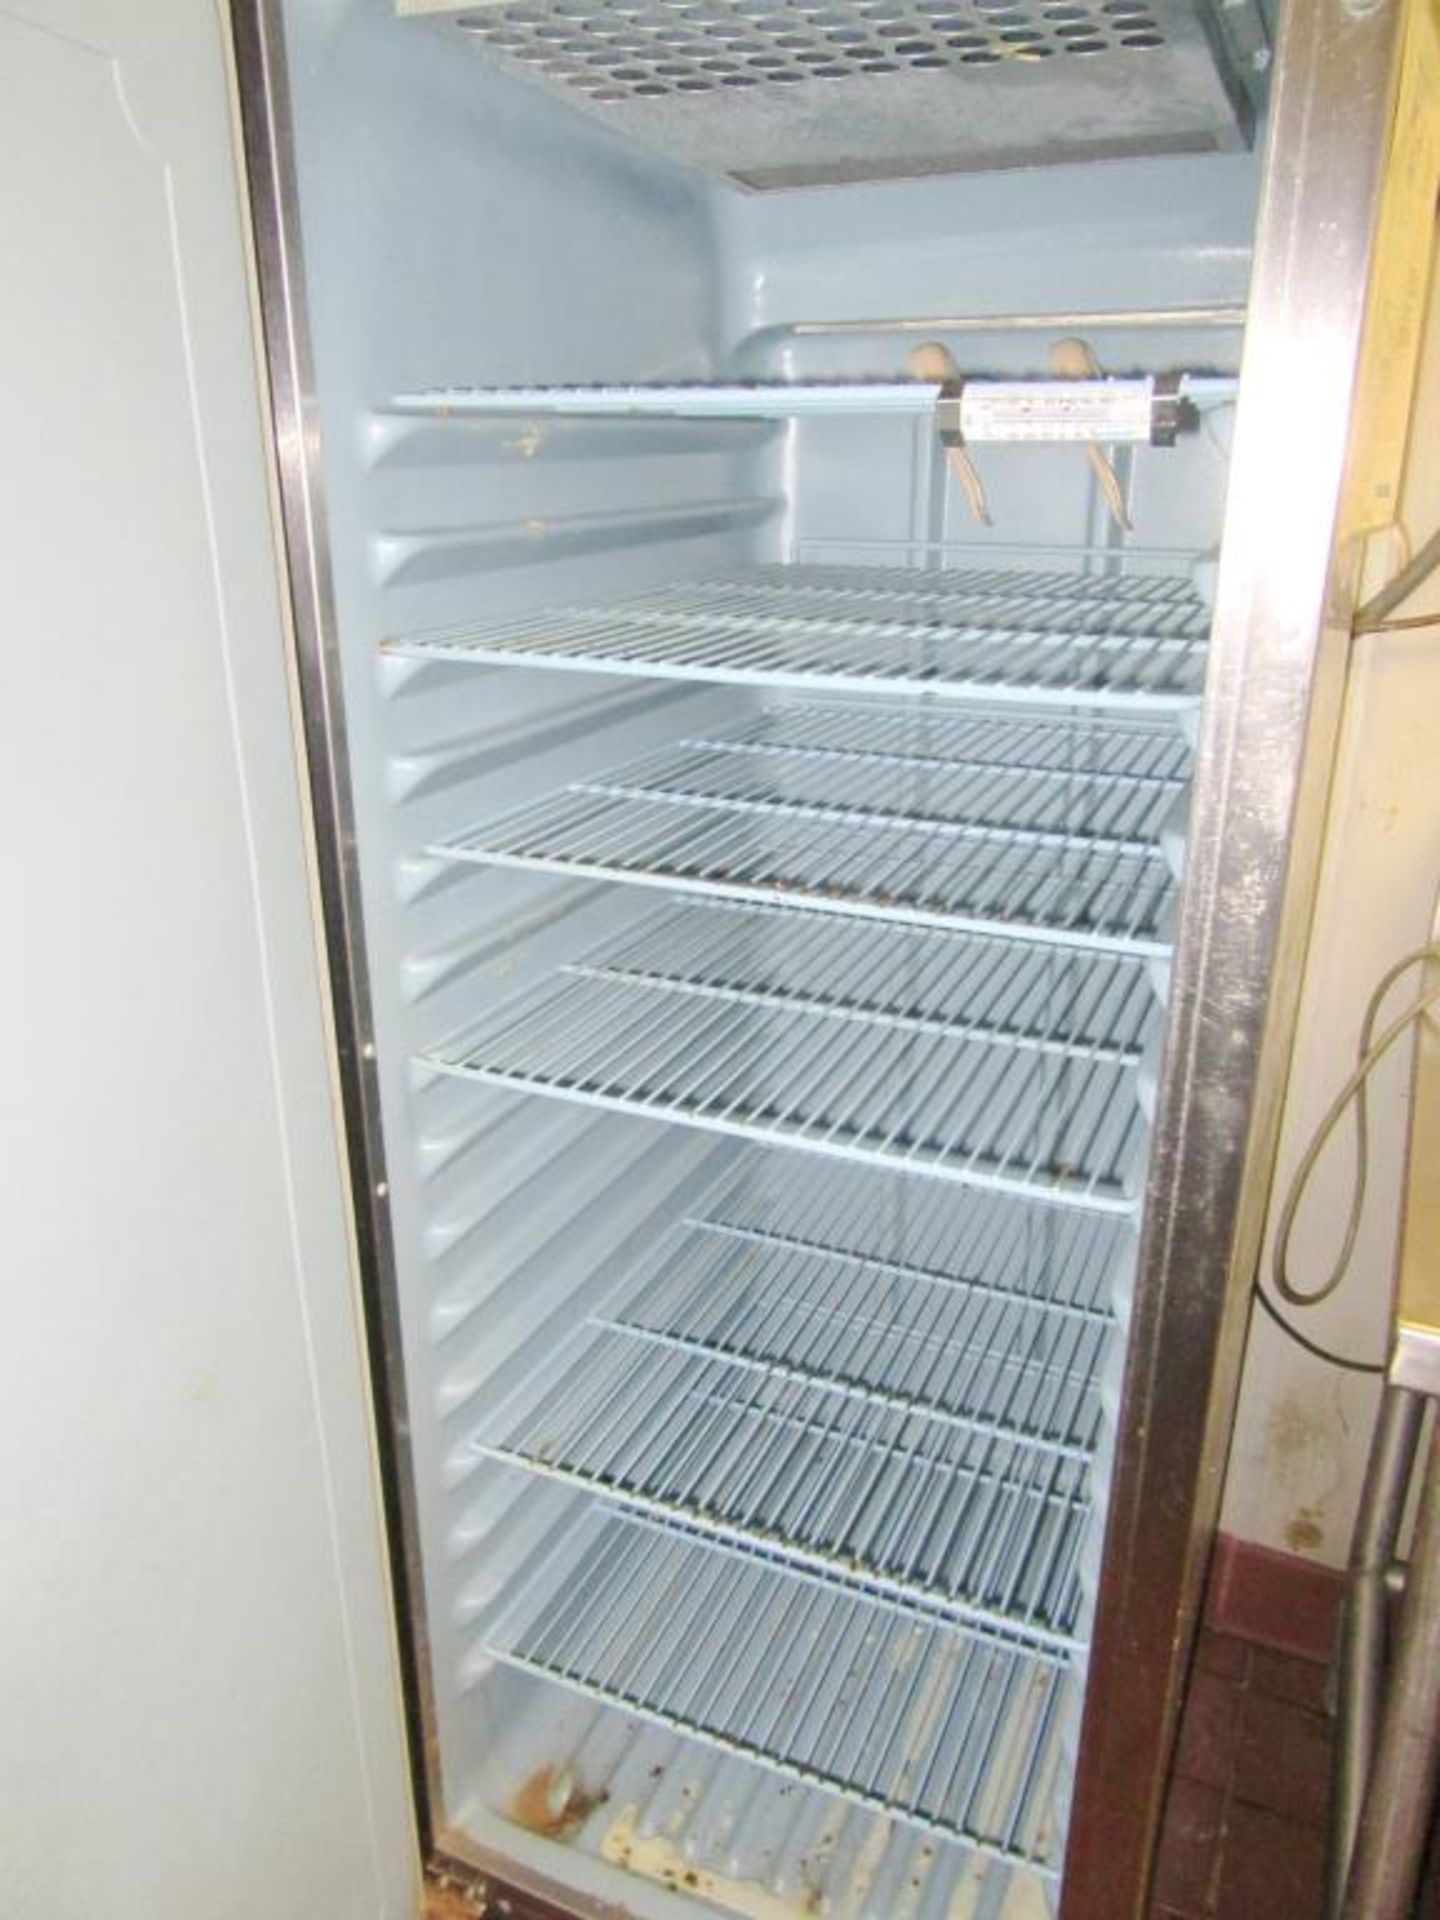 Refrigerator - Image 3 of 4